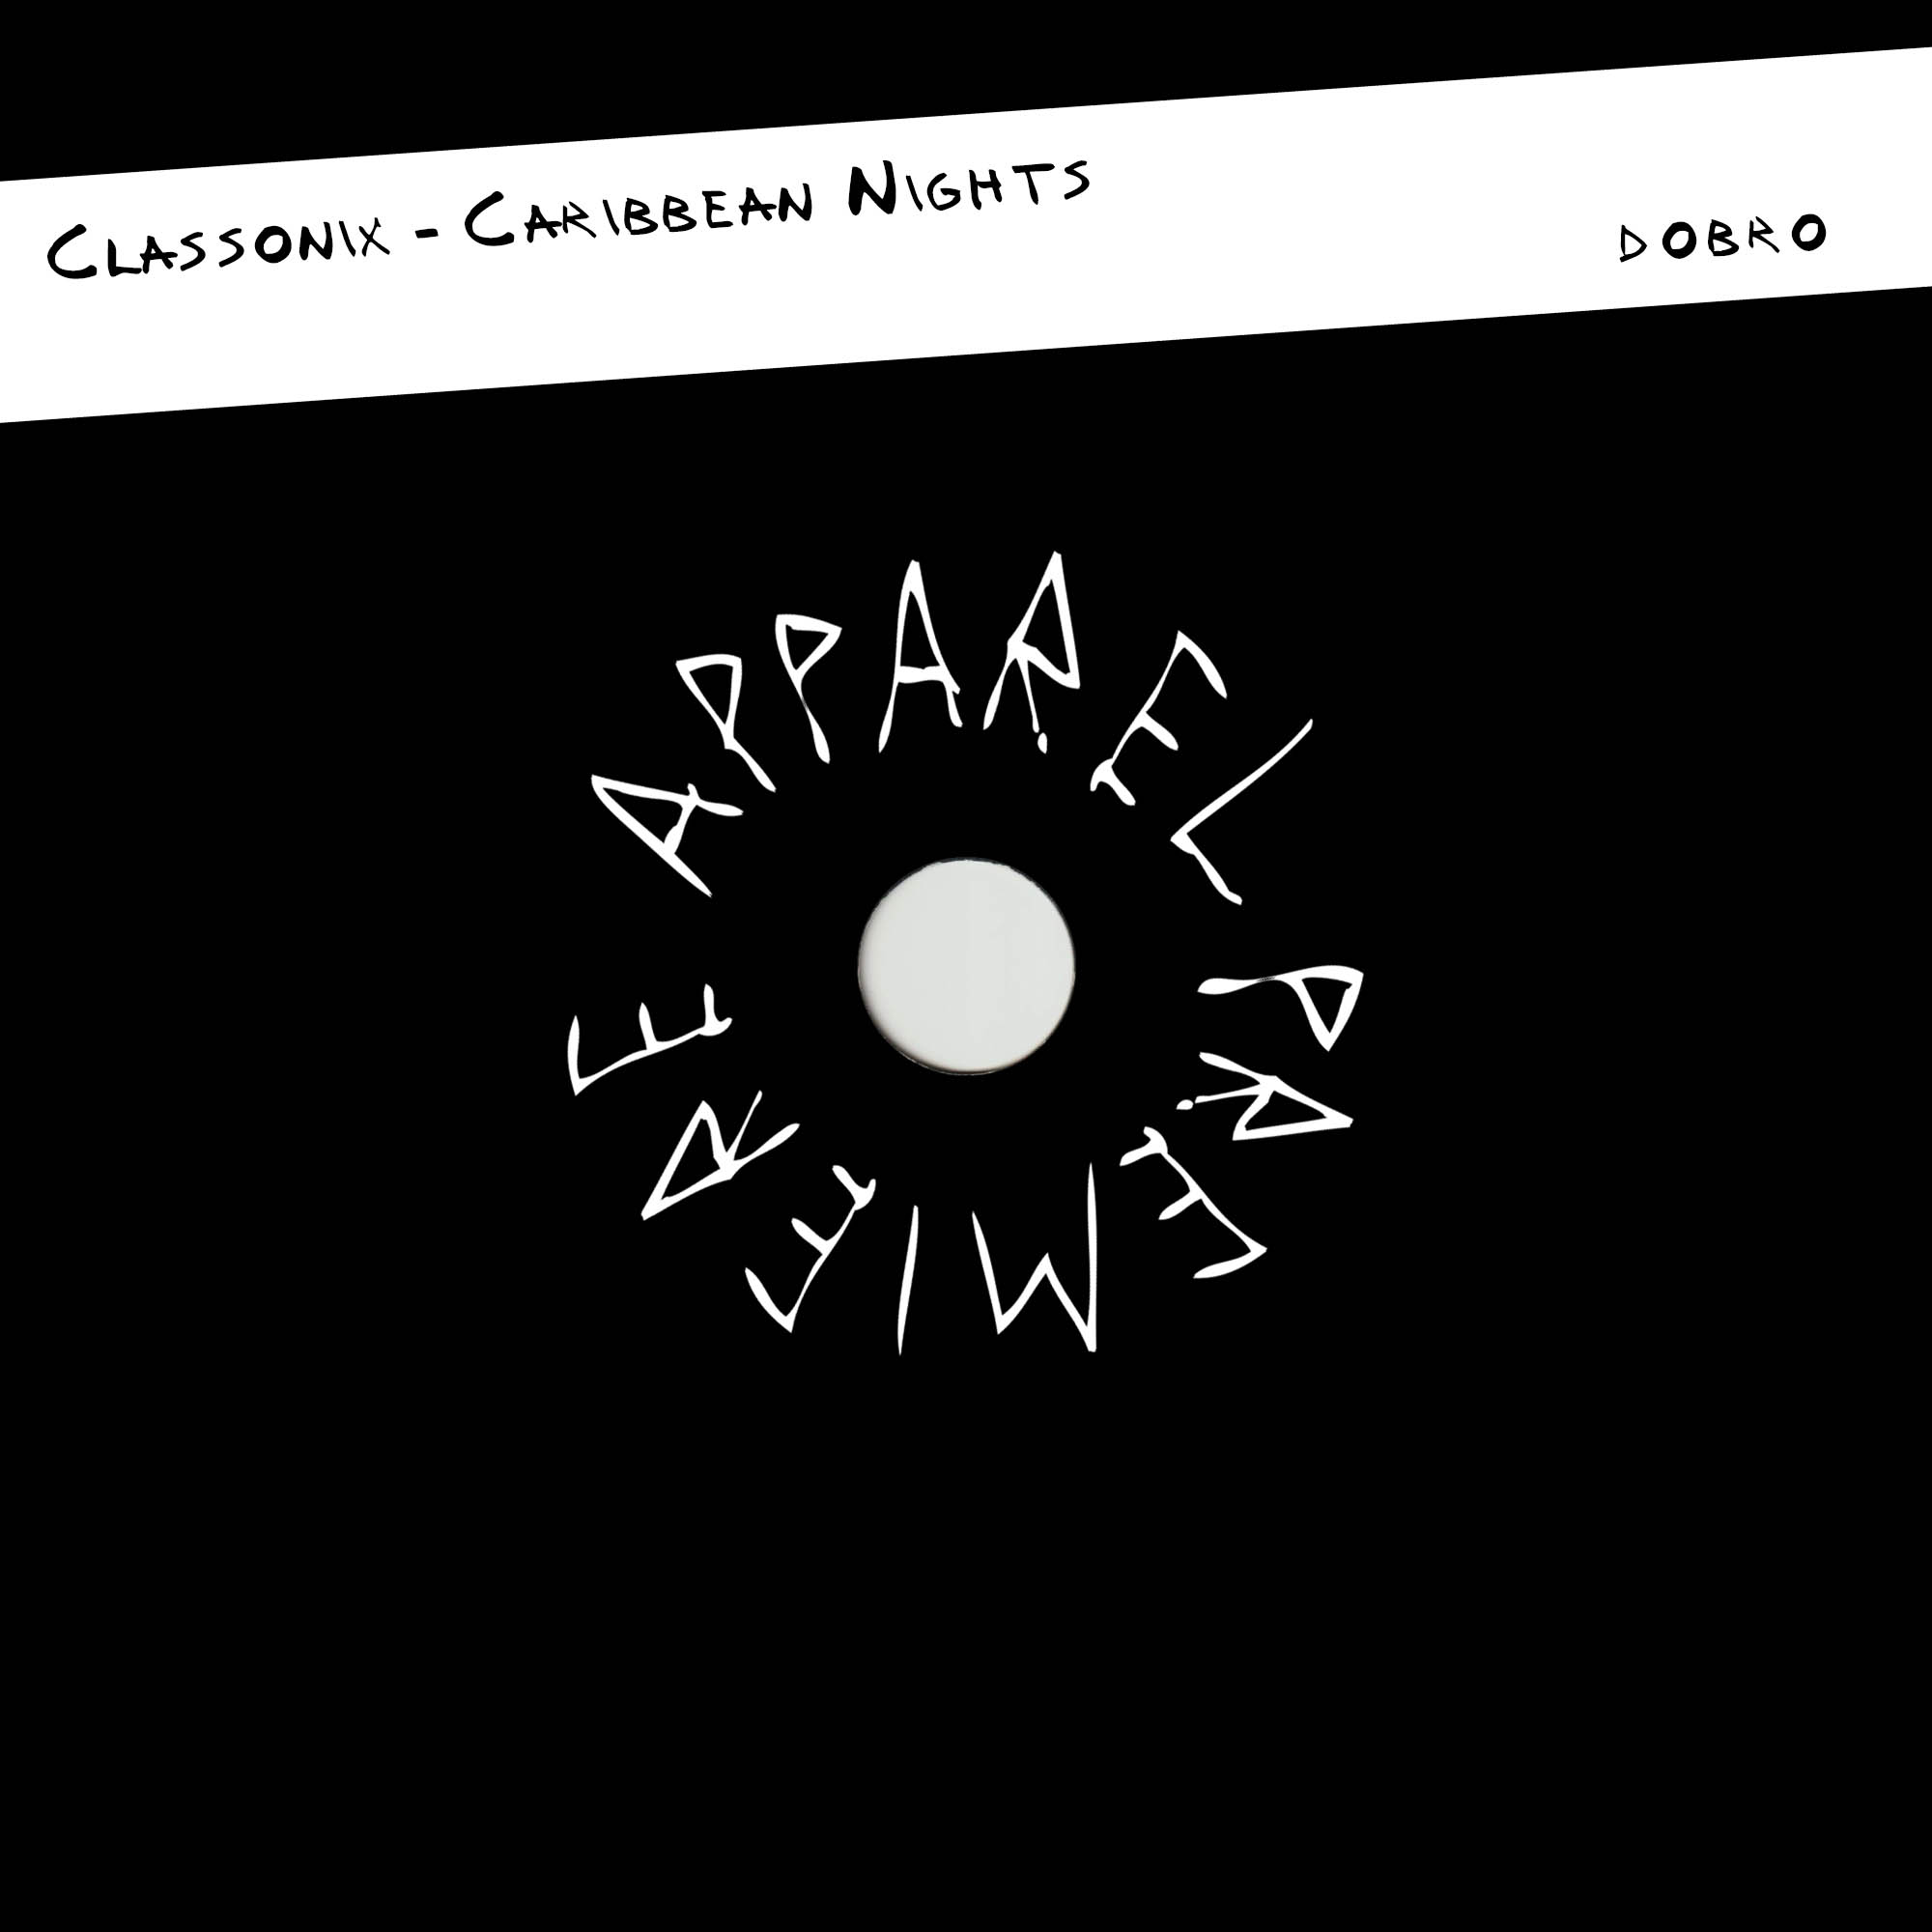 APPAREL PREMIERE- Classonix – Caribbean Nights [DOBRO]